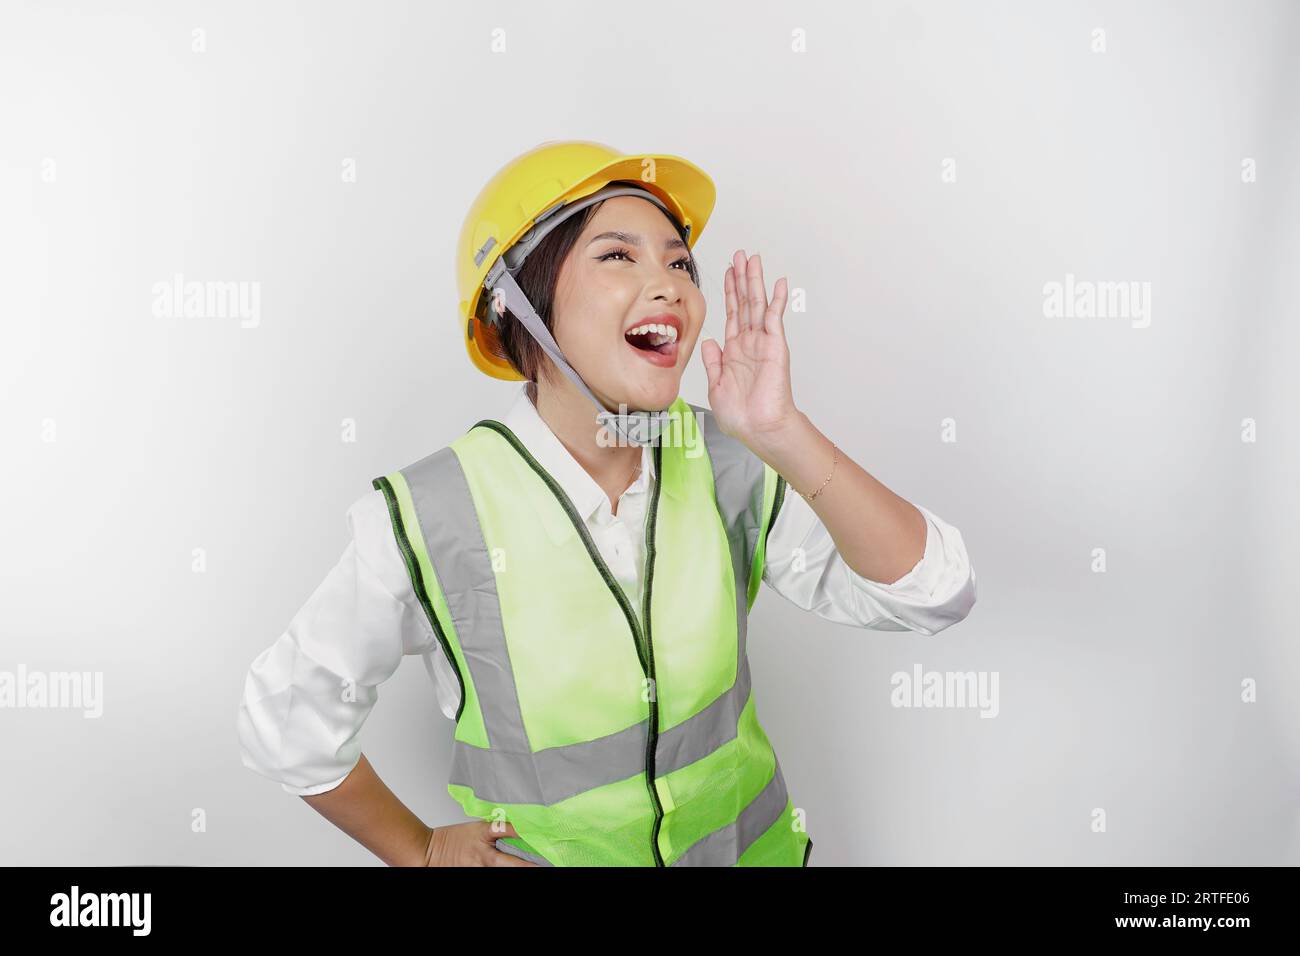 La giovane bella donna che lavora indossando un casco e un giubbotto di sicurezza grida e urla forte con una mano sulla bocca. Concetto del giorno del lavoro. Foto Stock